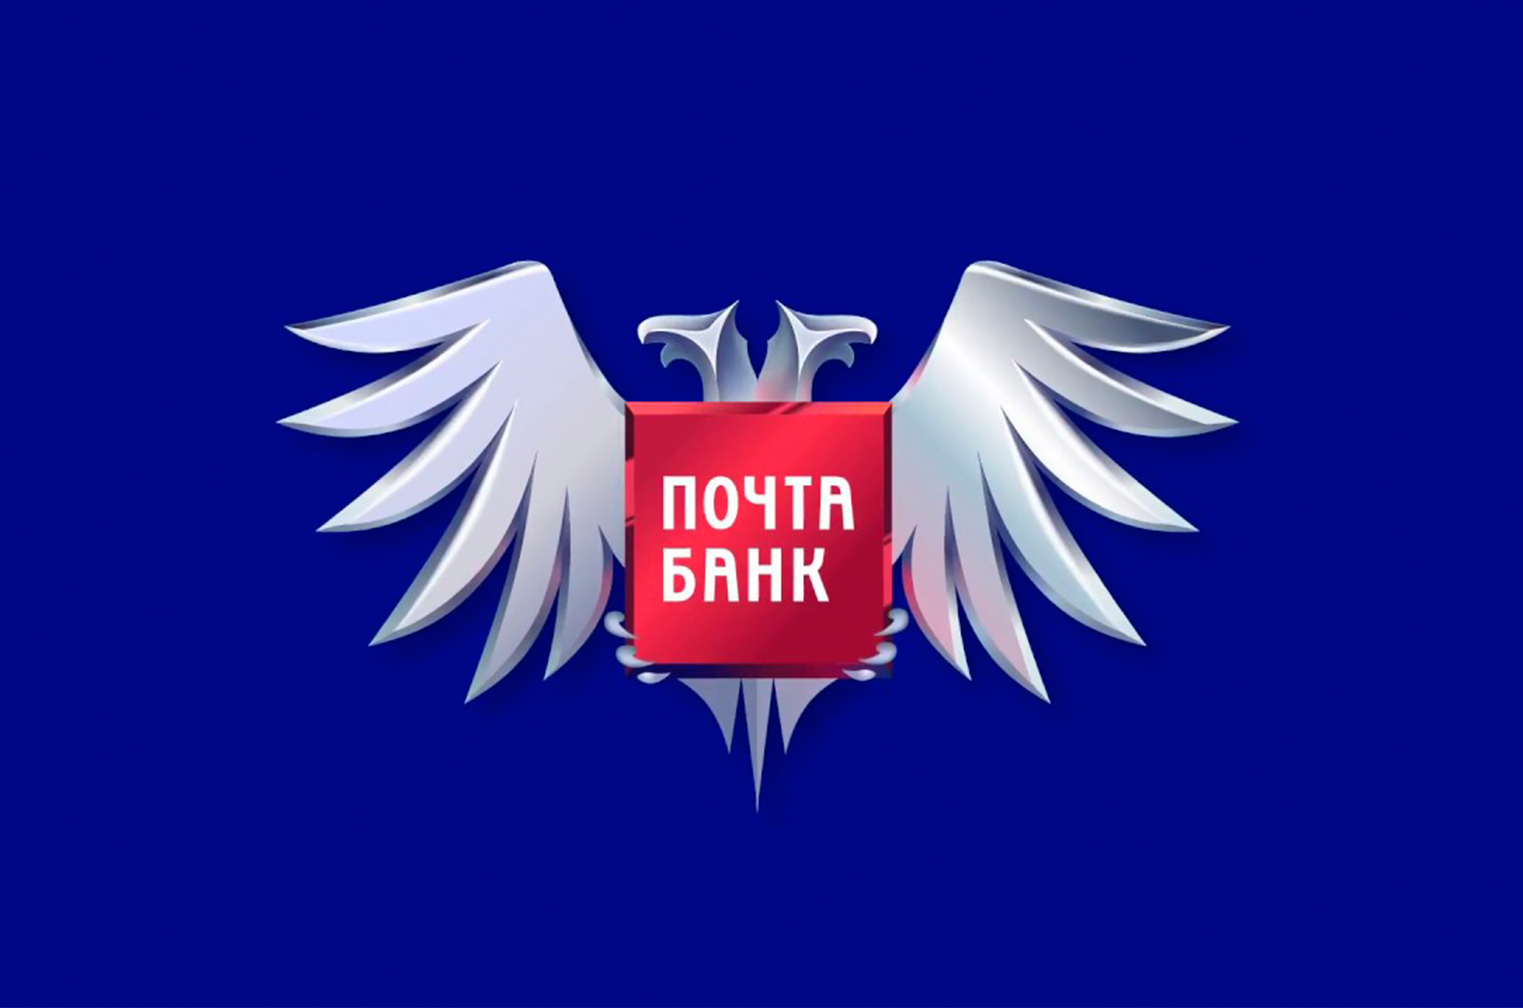 Информация о наличии банковских отделений и устройств АО «Почта Банк».